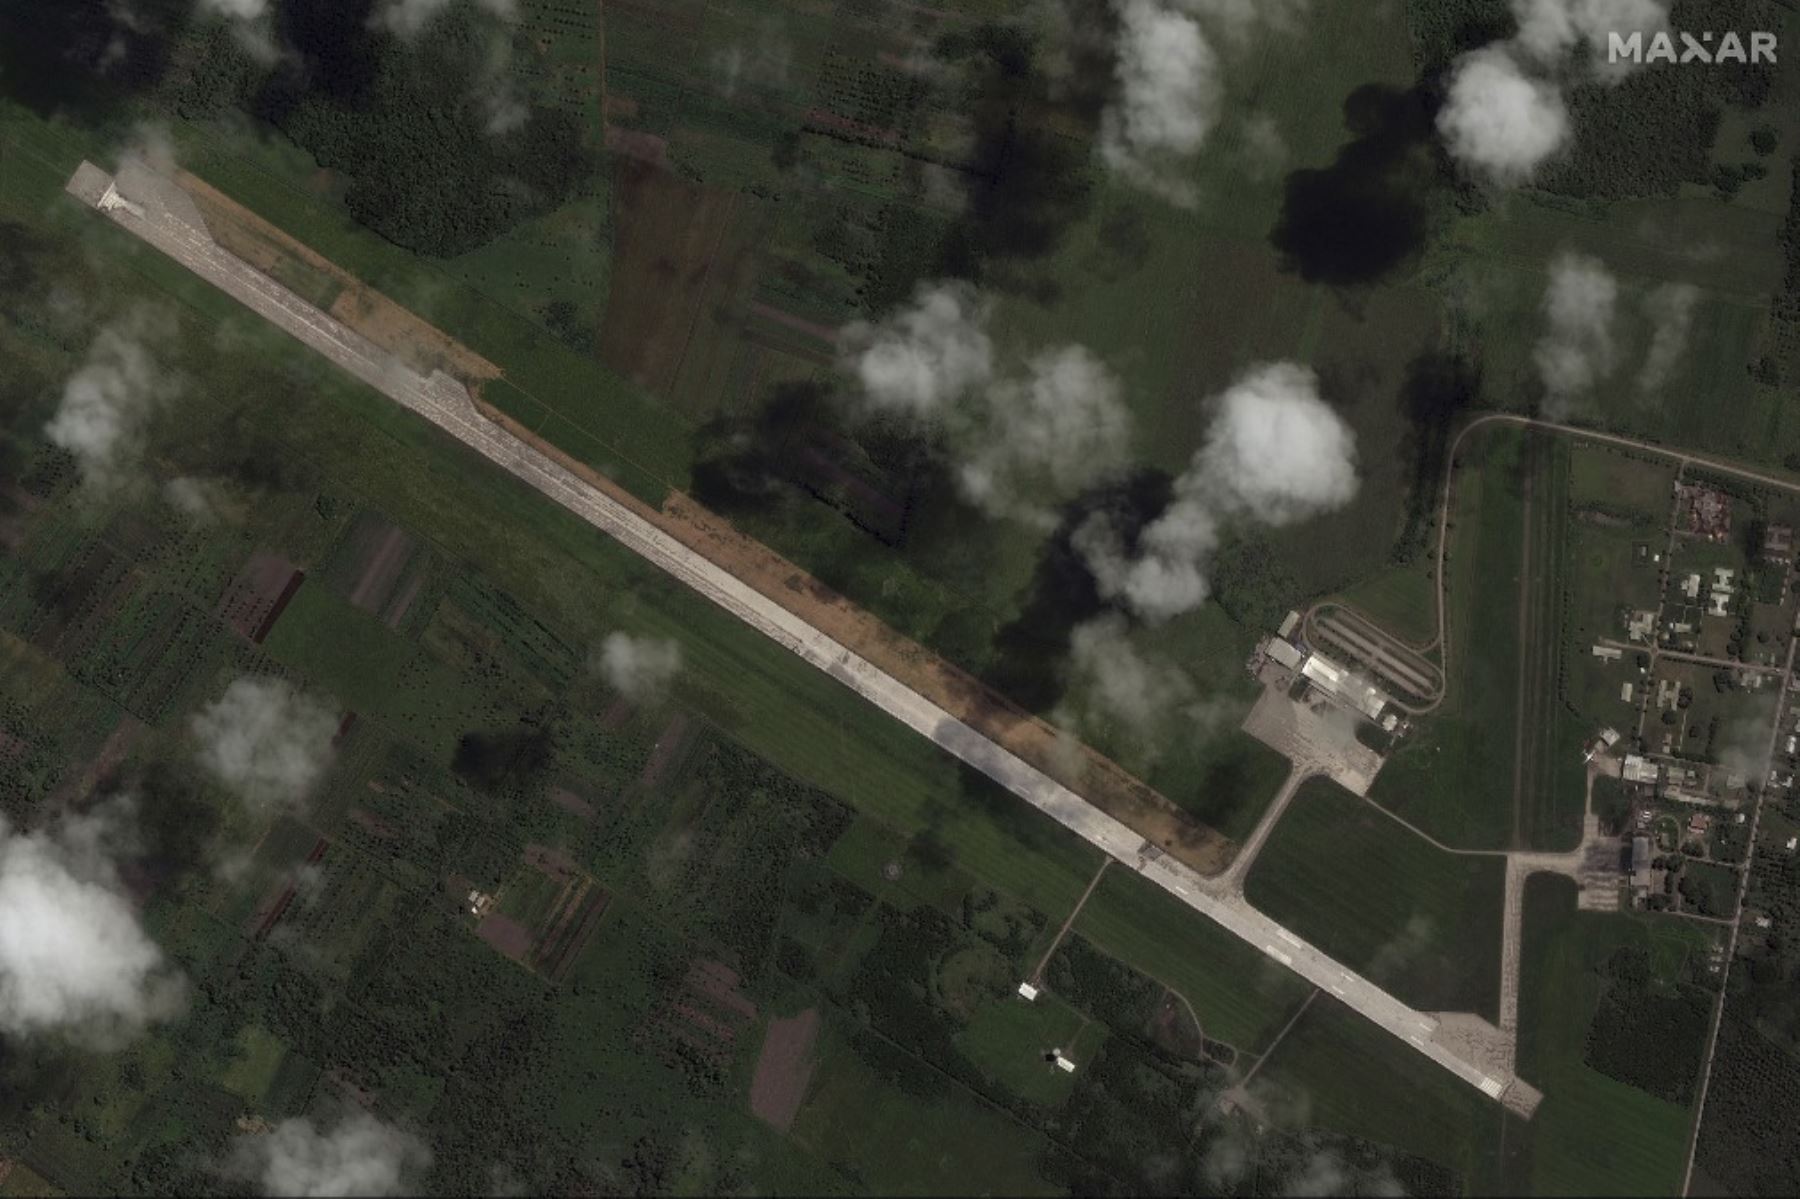 Esta imagen satelital muestra una limpieza de ceniza volcánica en curso en la pista del Aeropuerto Internacional Fua